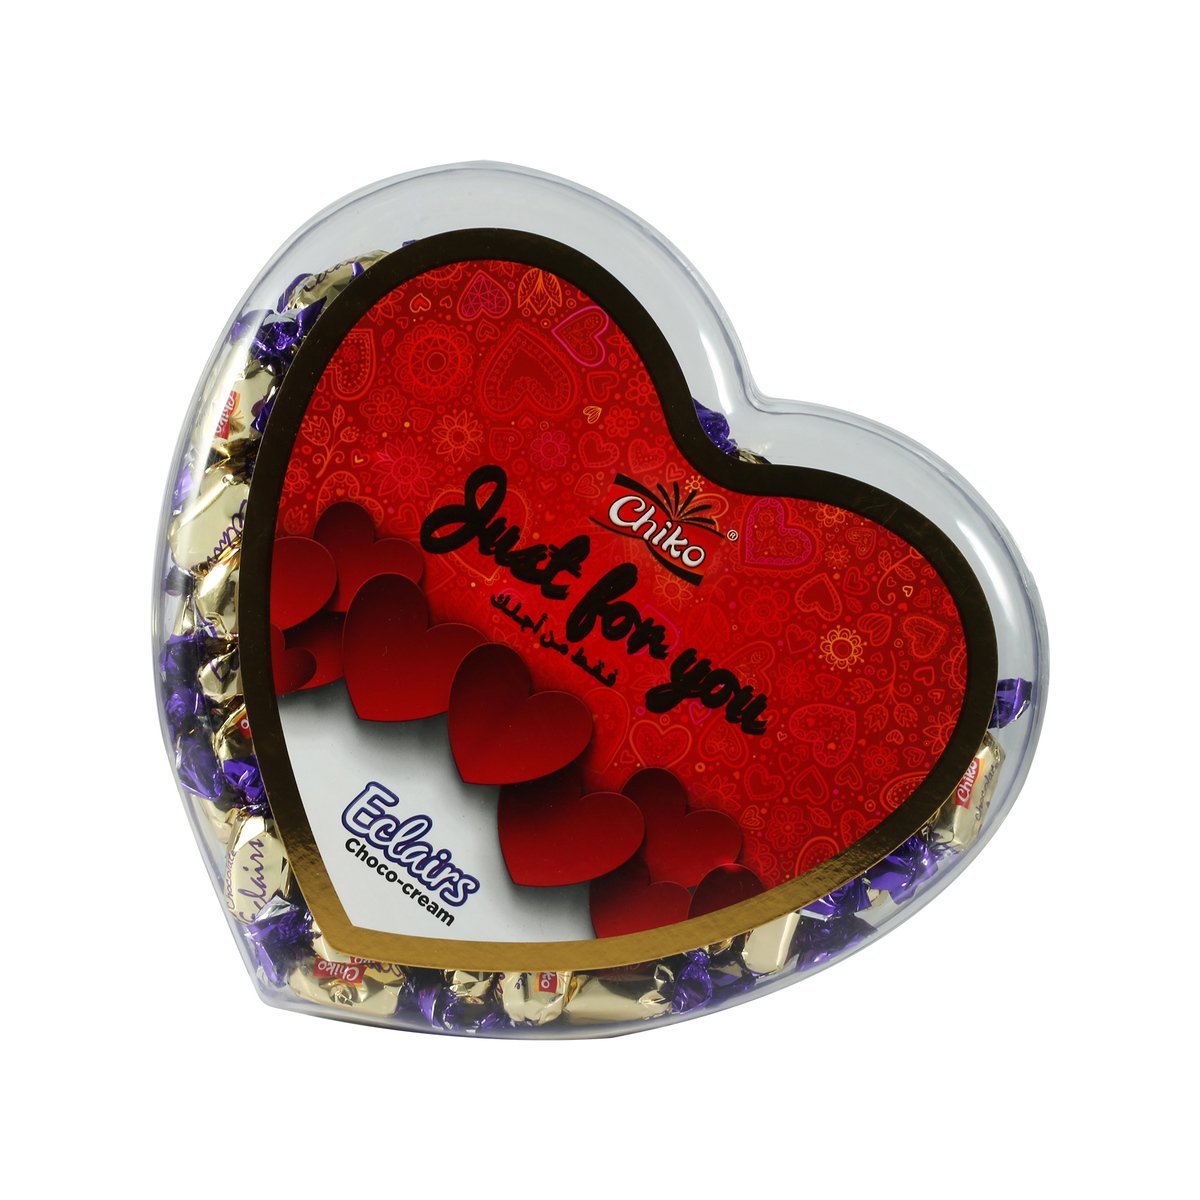 Chiko Eclairs Heart Box Chocolate 600g